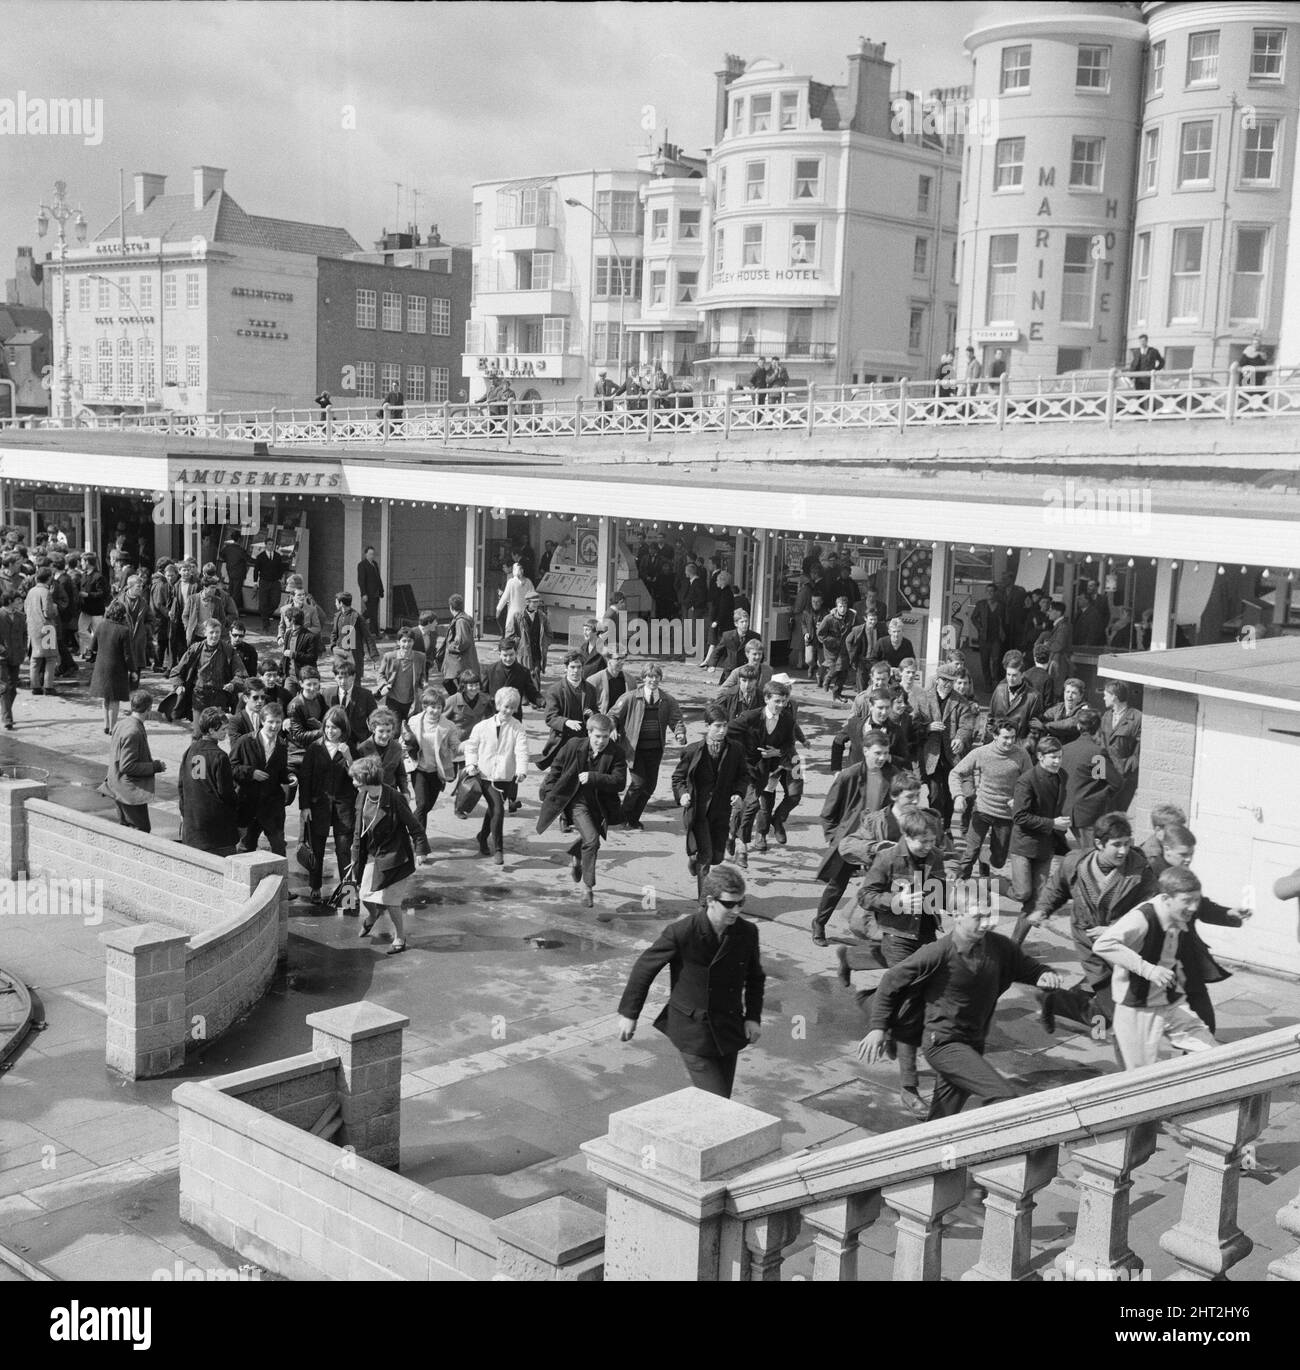 Die Mods und Rockers waren zwei widersprüchliche britische Jugendsubkulturen von Anfang bis Mitte 1960s. Die Berichterstattung über die Kämpfe von Mods und Rockern im Jahr 1964 löste eine moralische Panik über britische Jugendliche aus, und die beiden Gruppen wurden als Volksteufel bezeichnet. Mods laufen unter der Promenade von Brighton. 18.. April 1965. Stockfoto